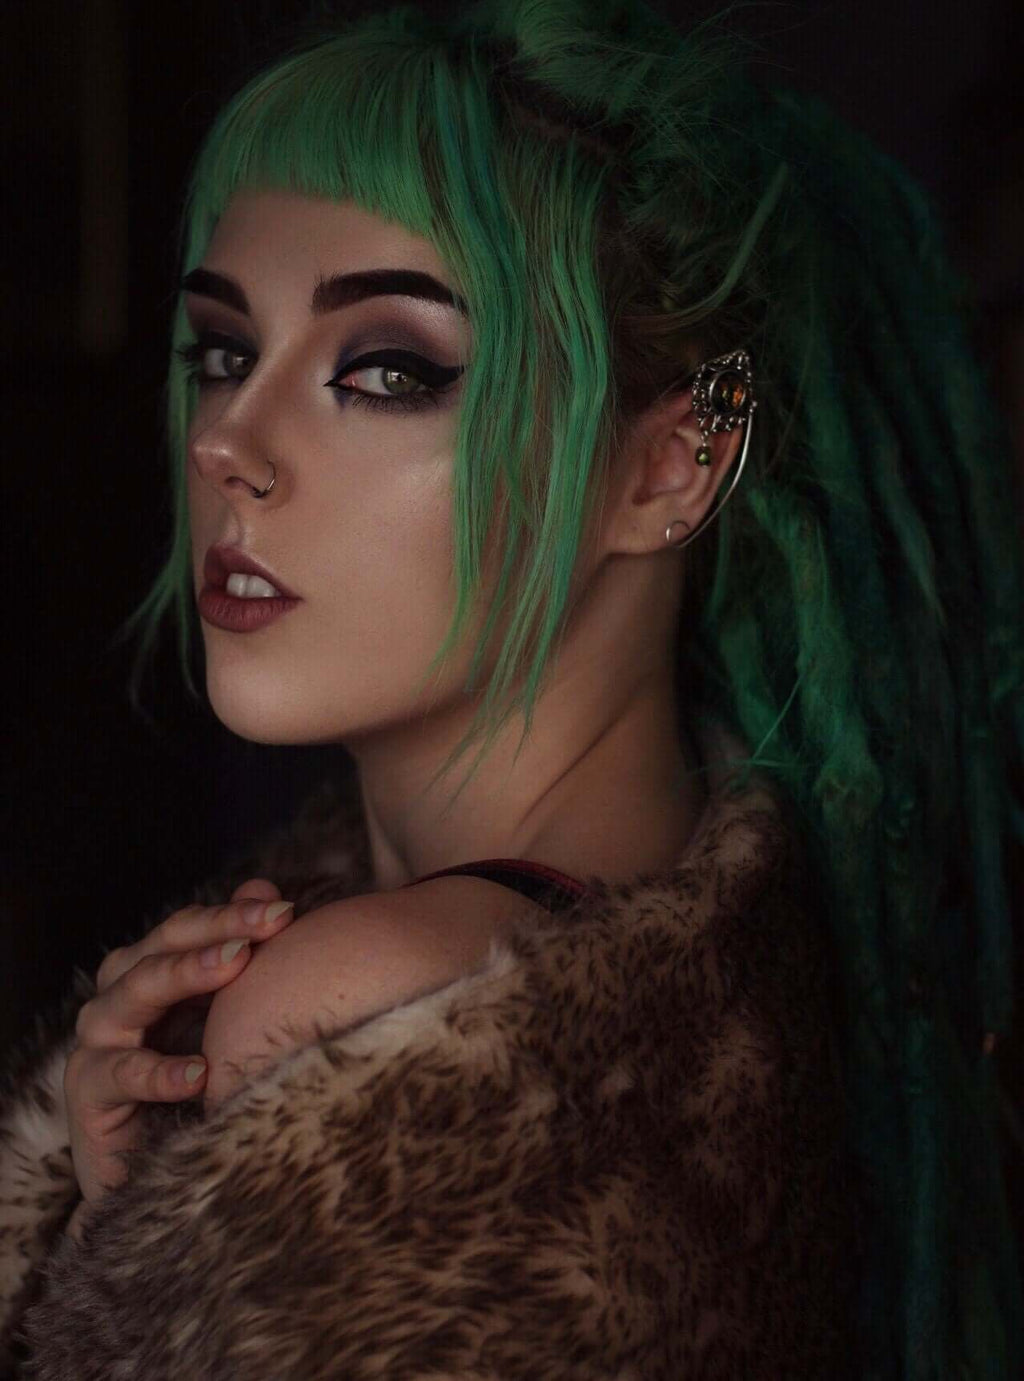 model wearing elf ears